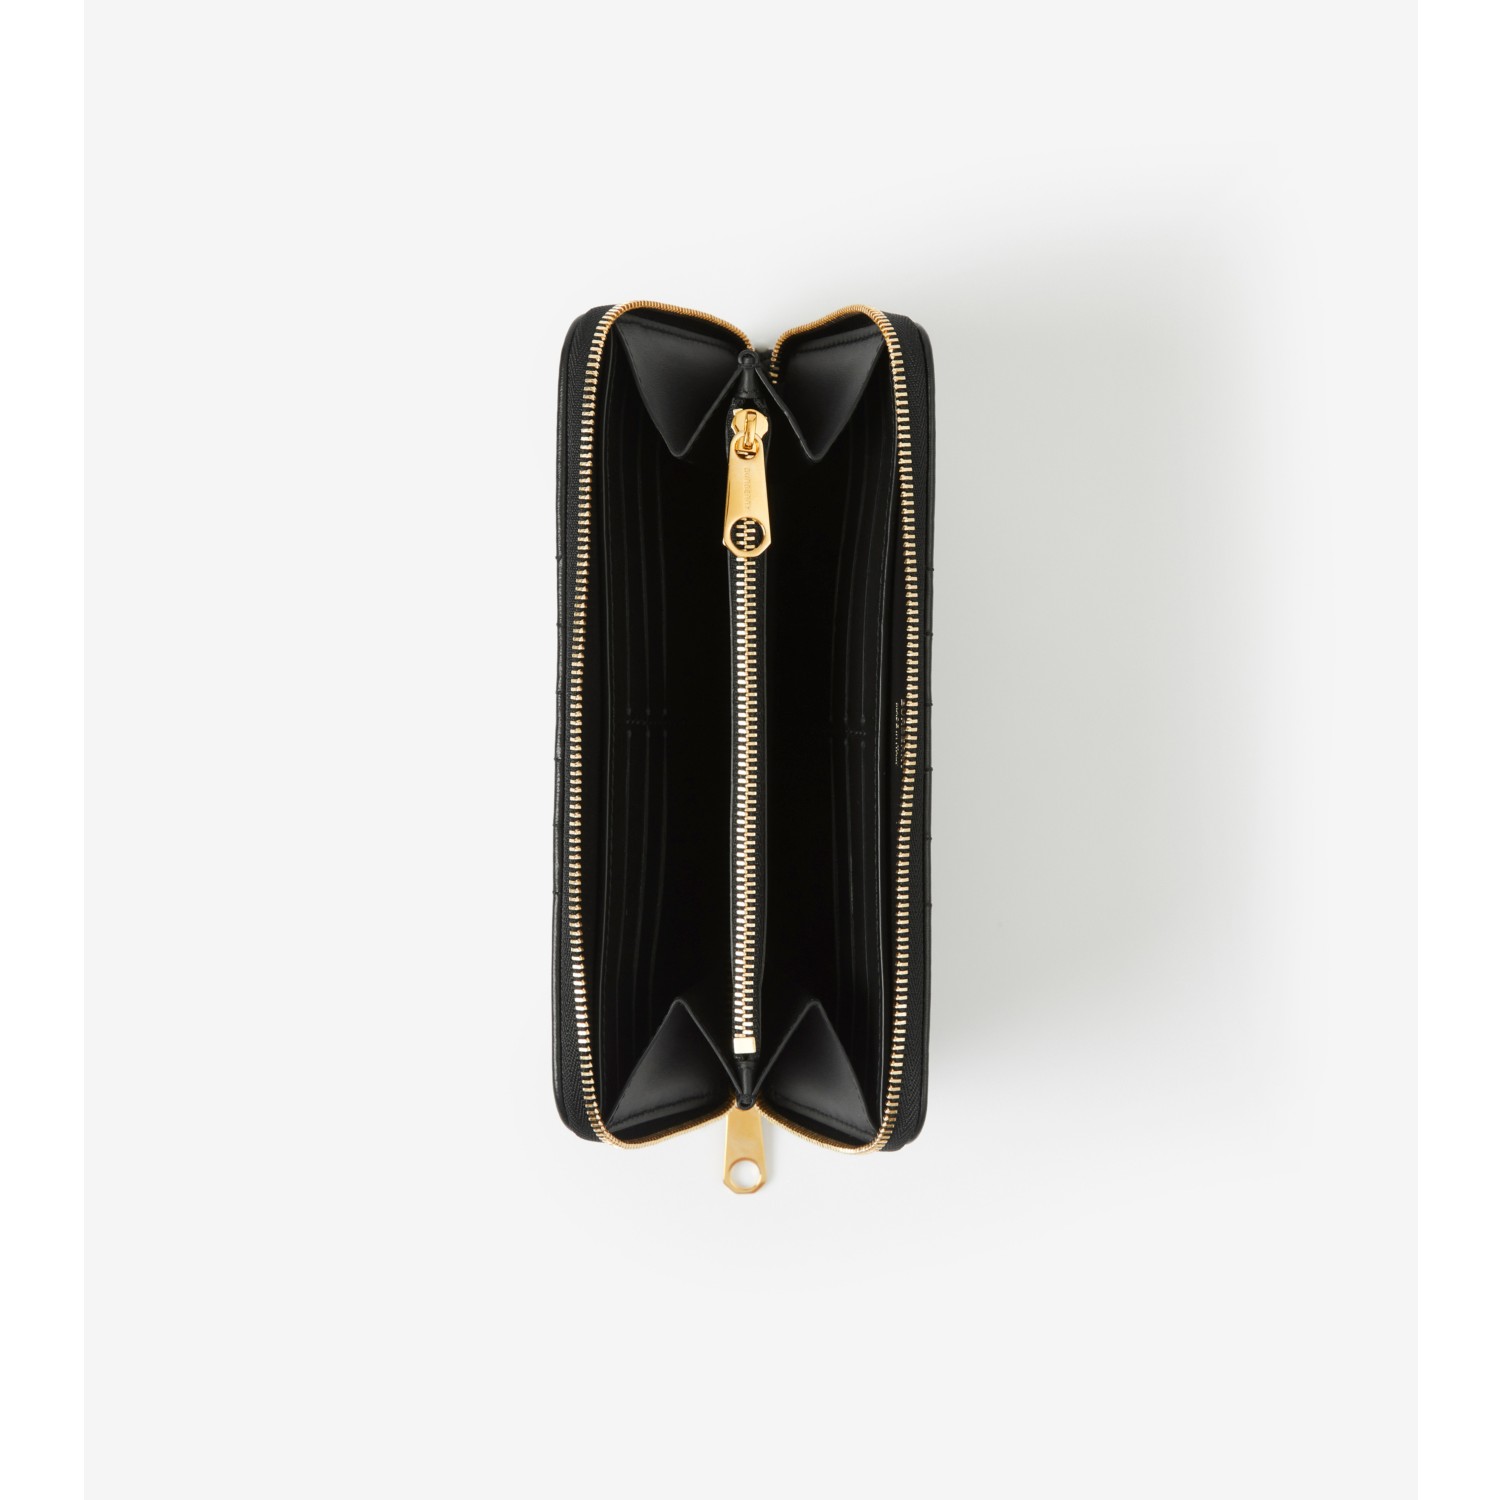 Women's Quilted Zip-around Wallet by Saint Laurent